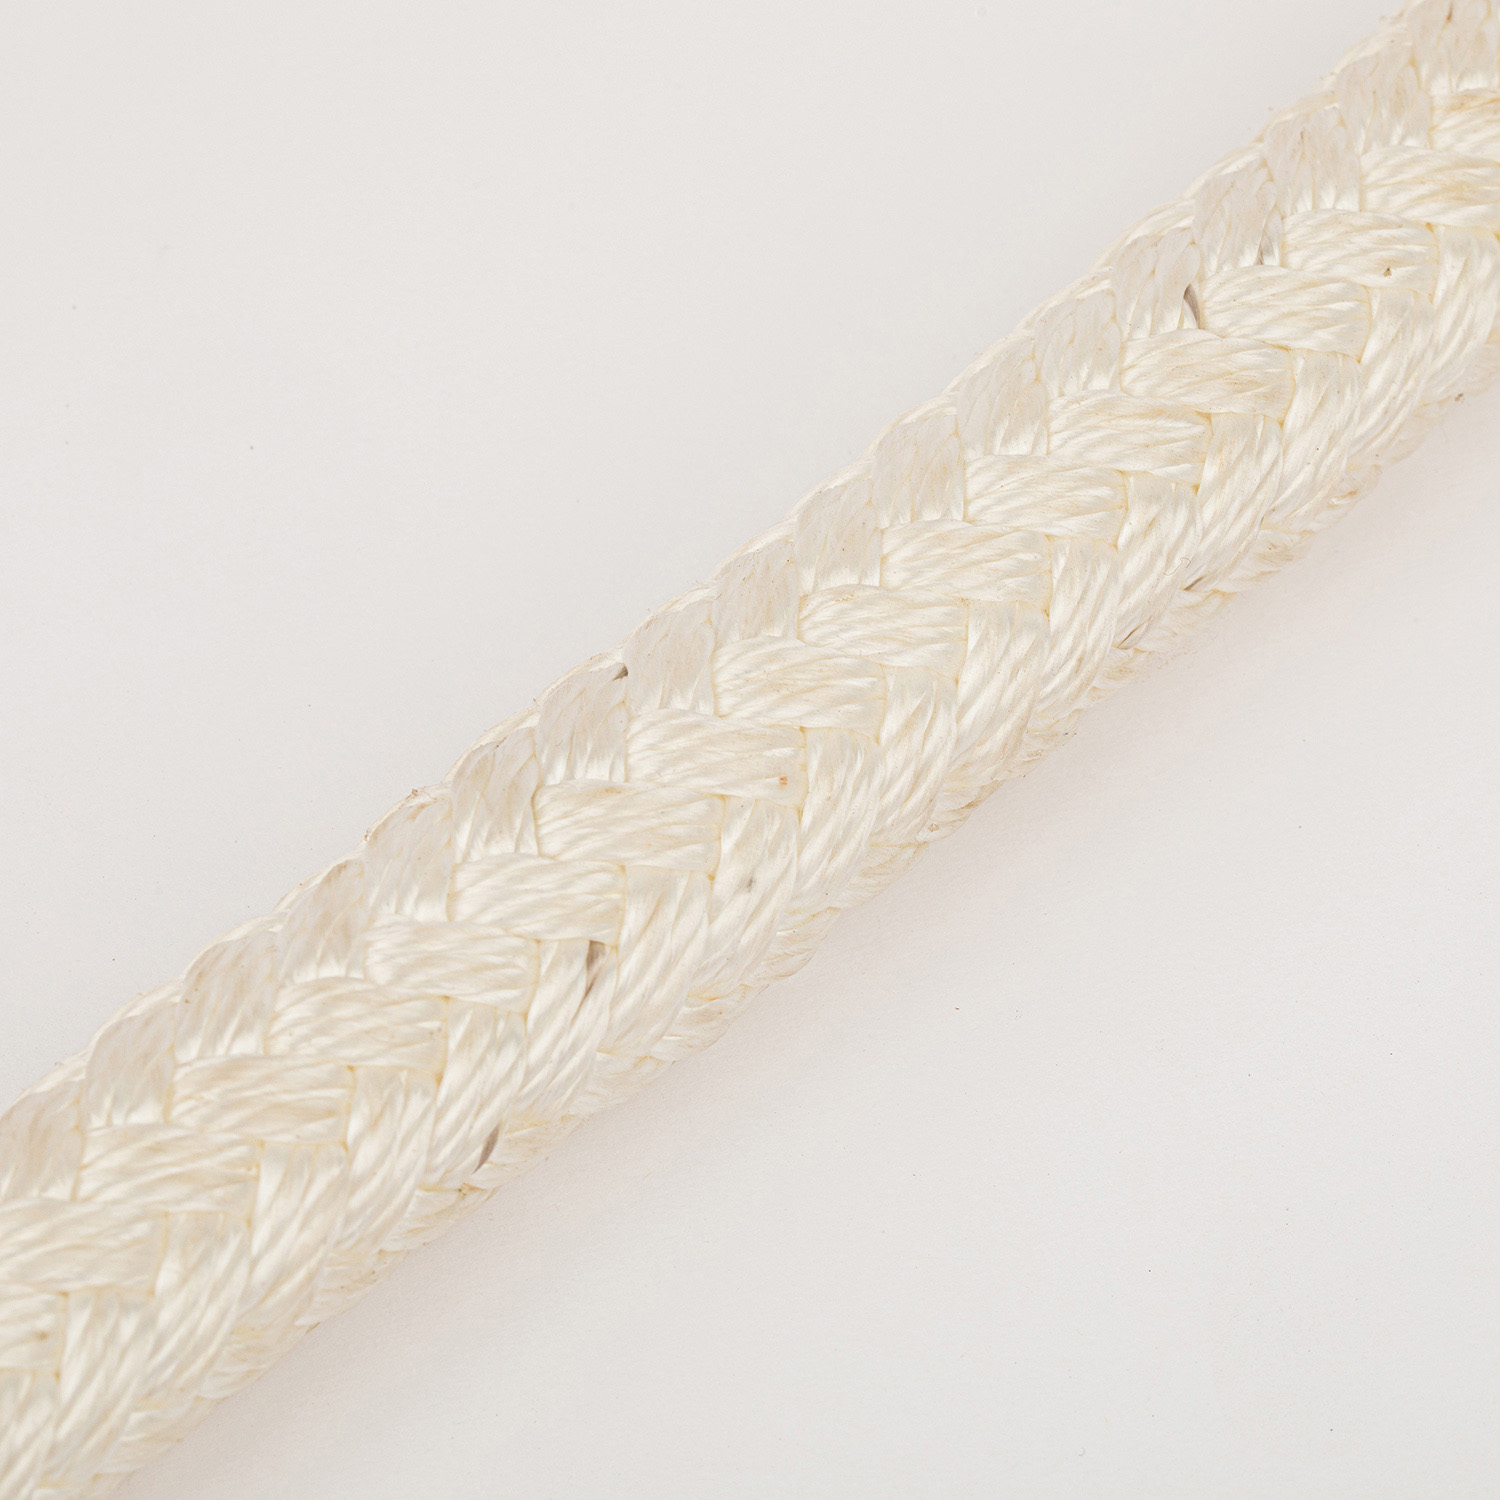 Marine Nylon Synthetic Fiber Rope